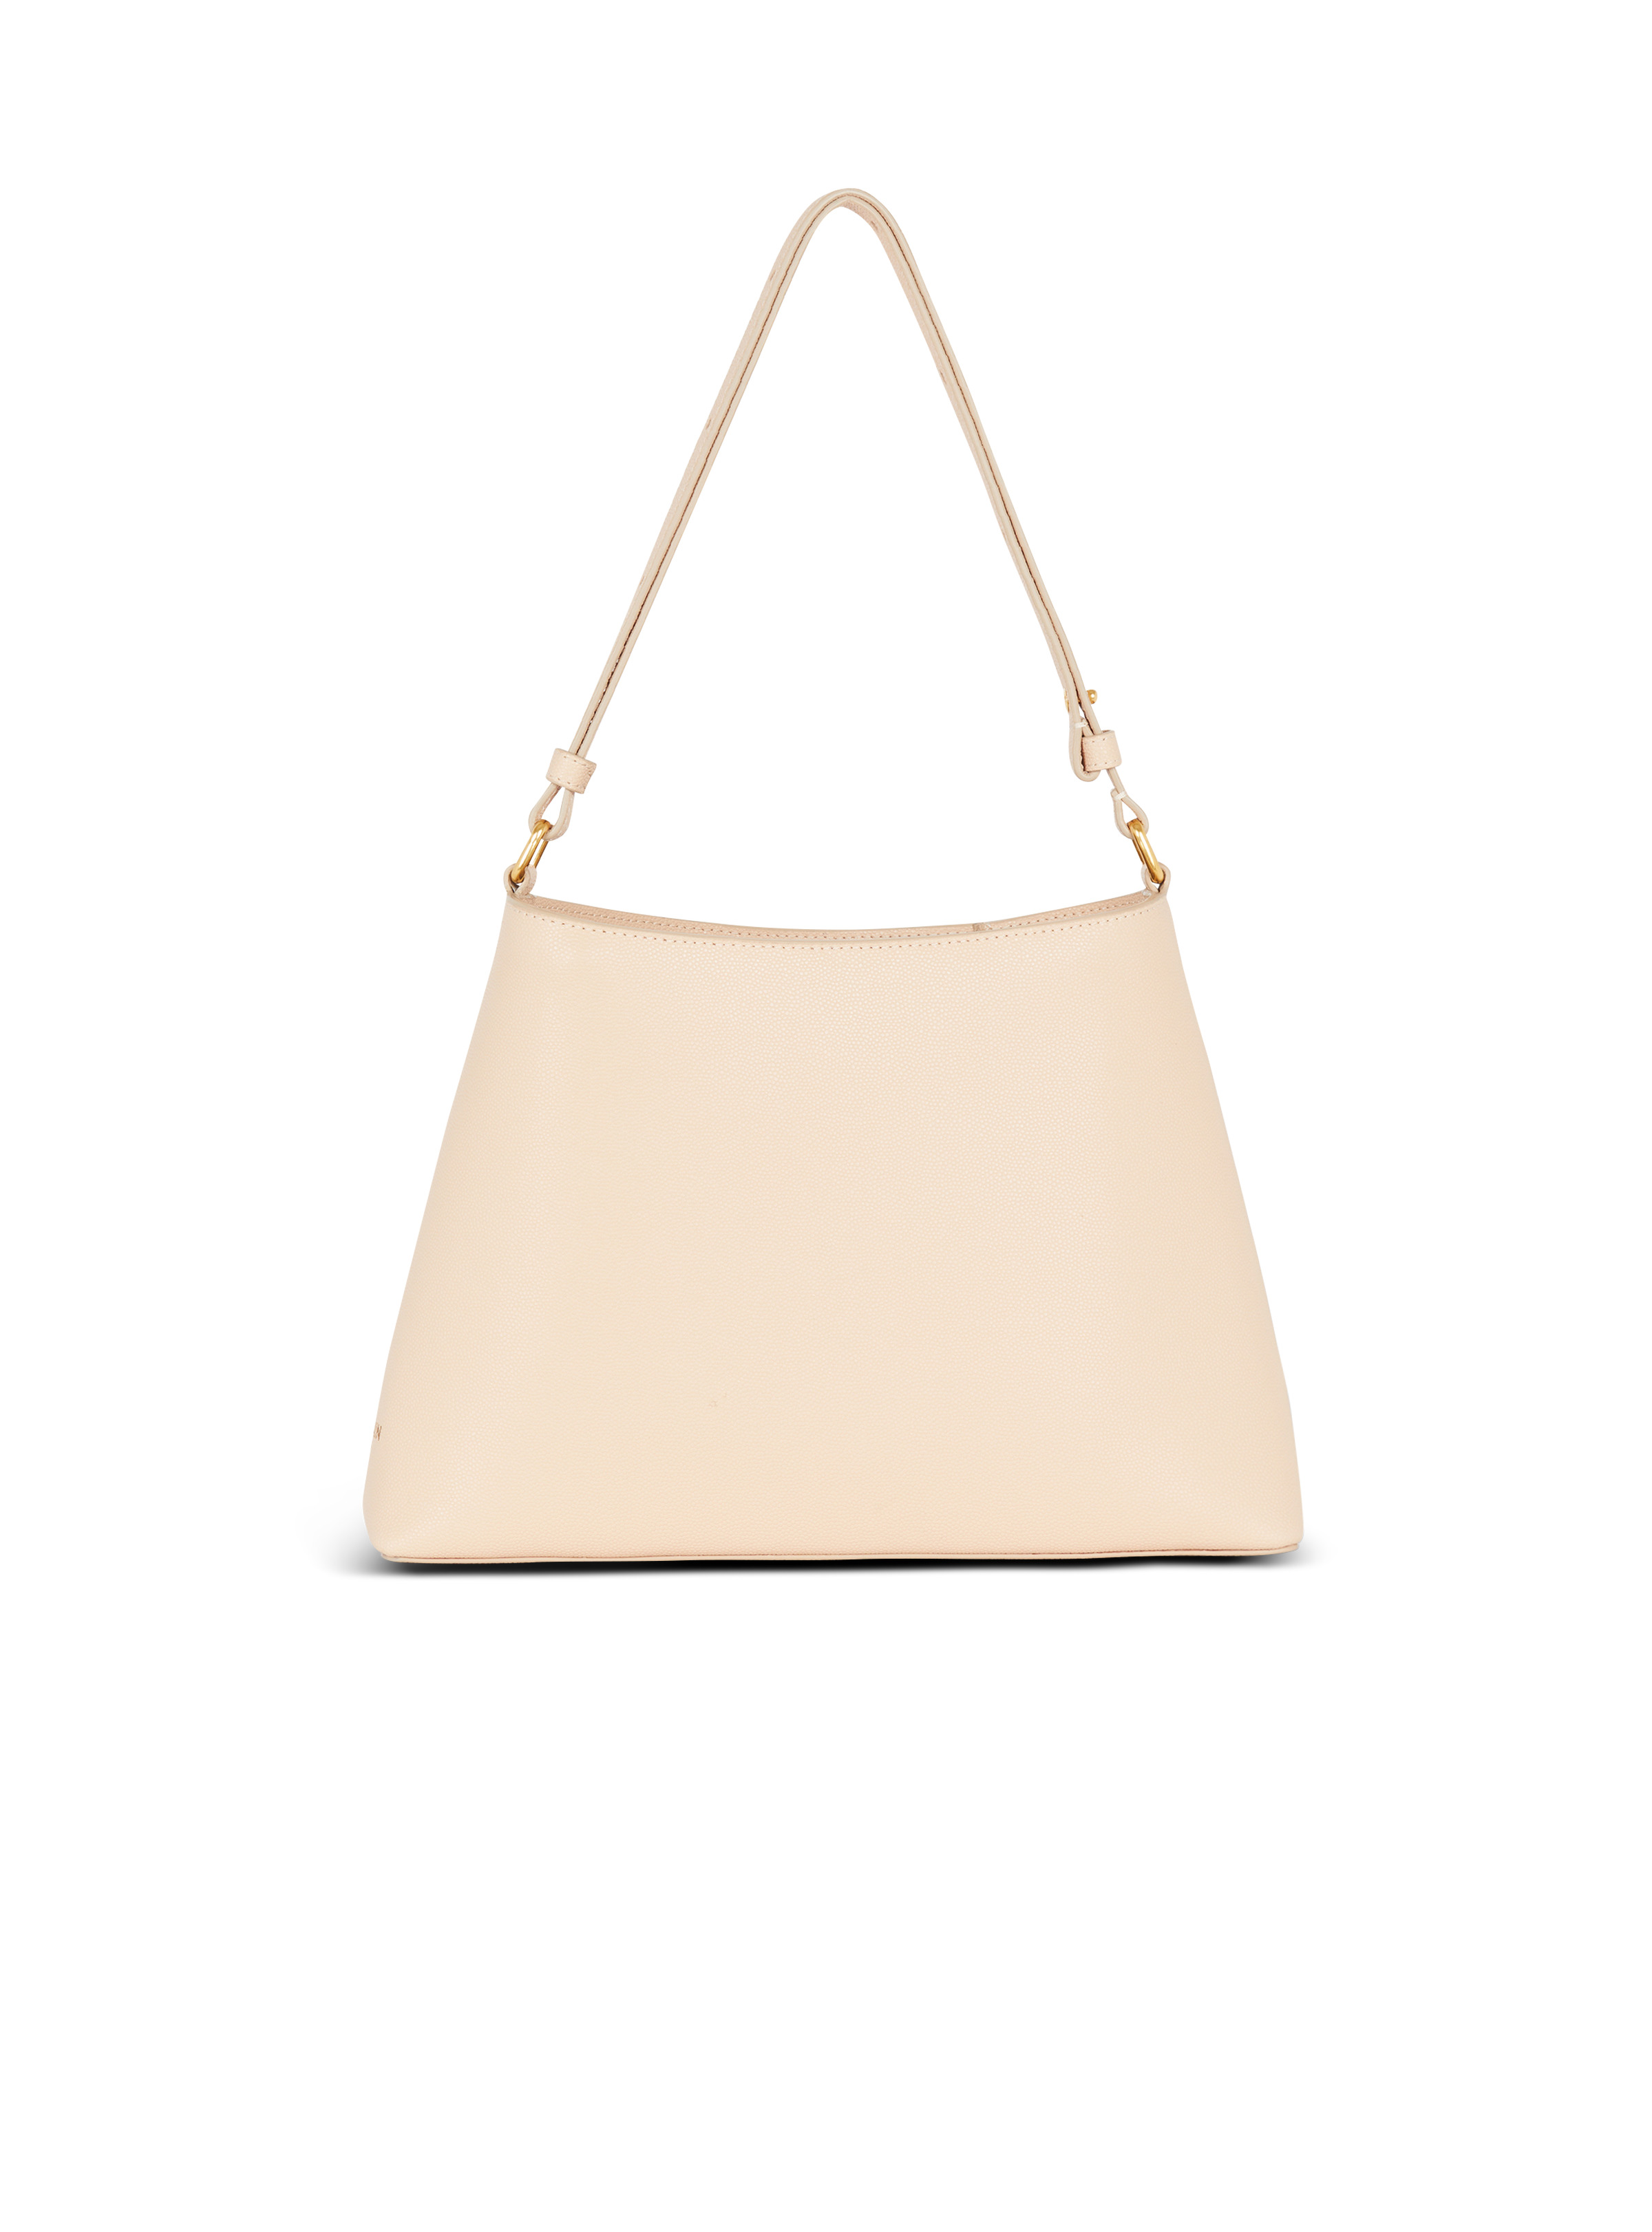 Emblème handbag in grained leather - 4